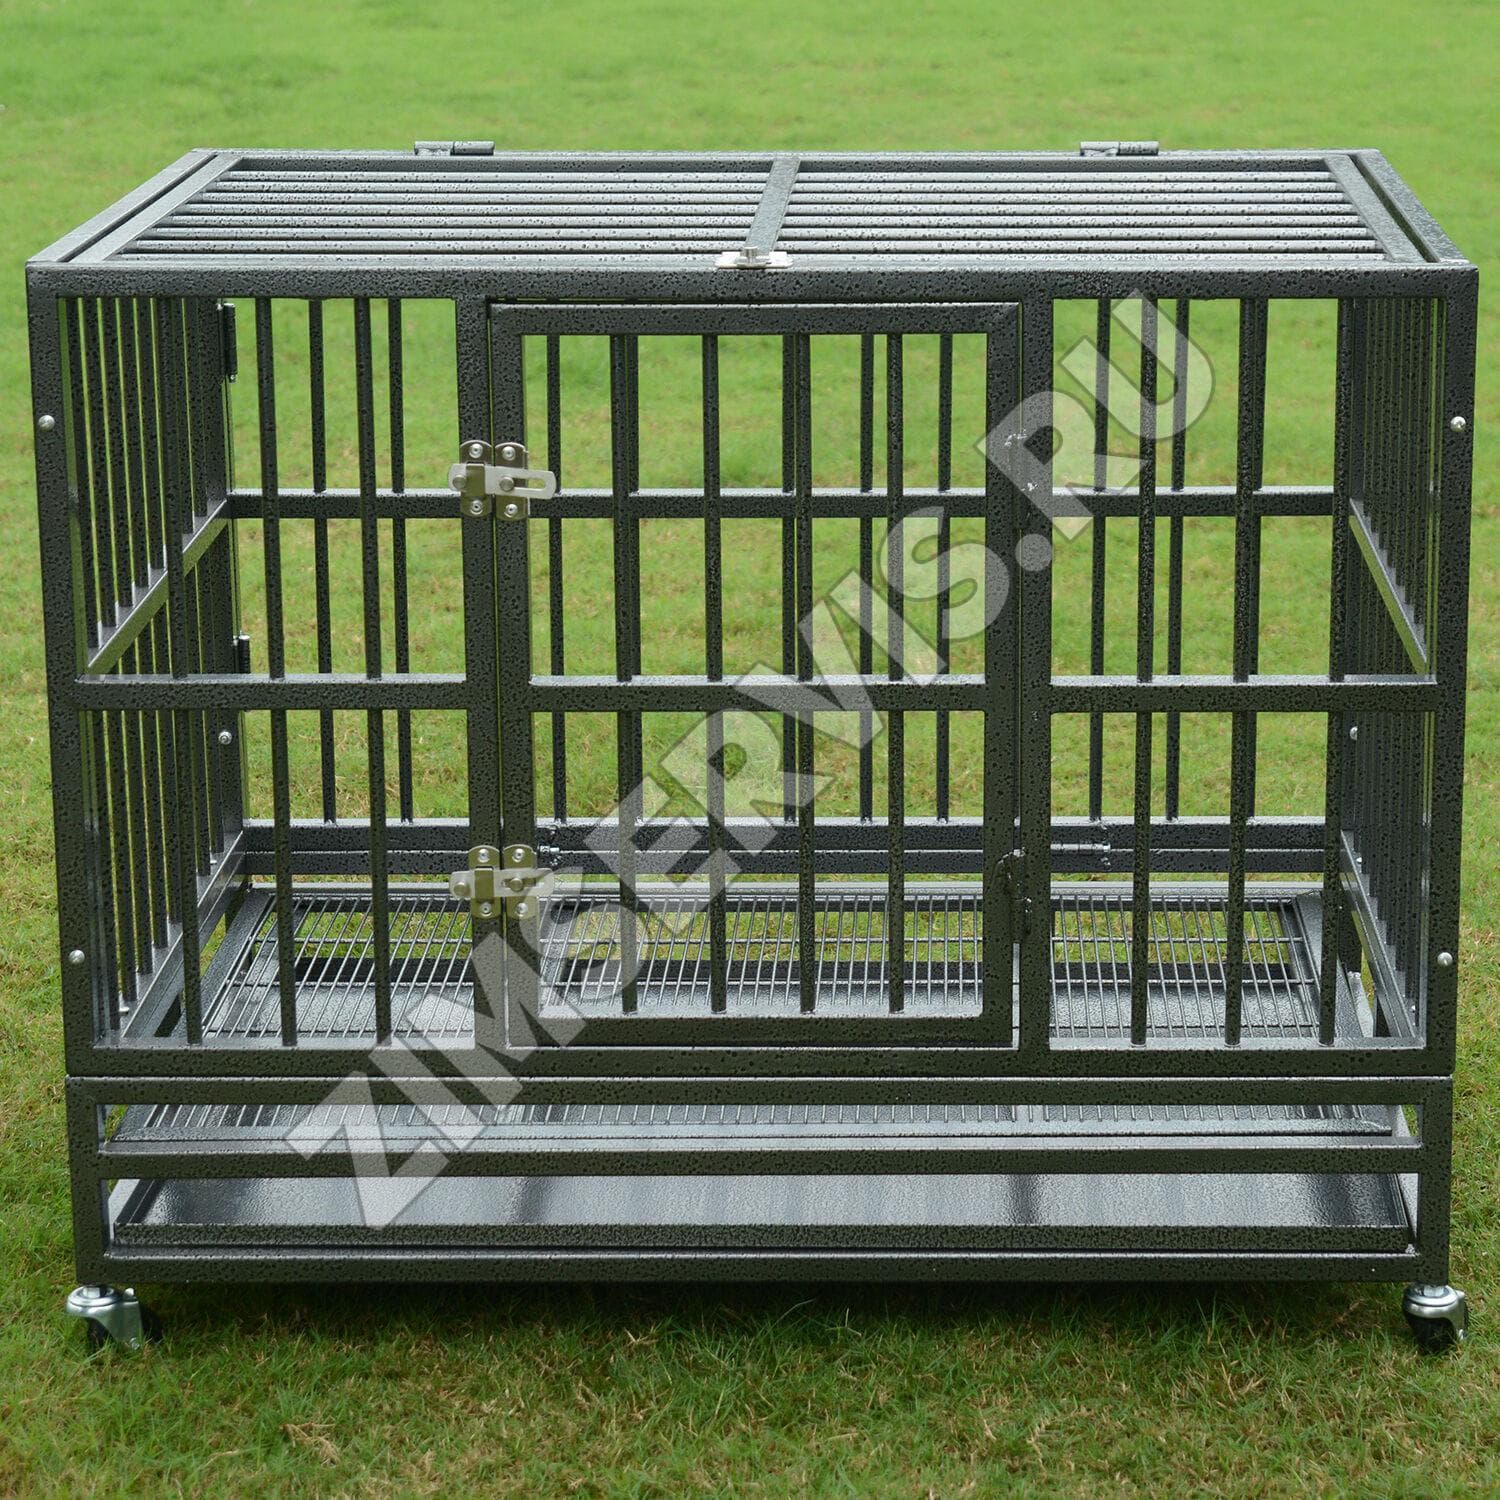 Клетка для собак 3. Клетка для собак "Heavy Duty Crate". Клетка для собак Duvo+ Heavy Duty Crate. Клетка-Кеннел. Pet Kennel клетка упаковка.